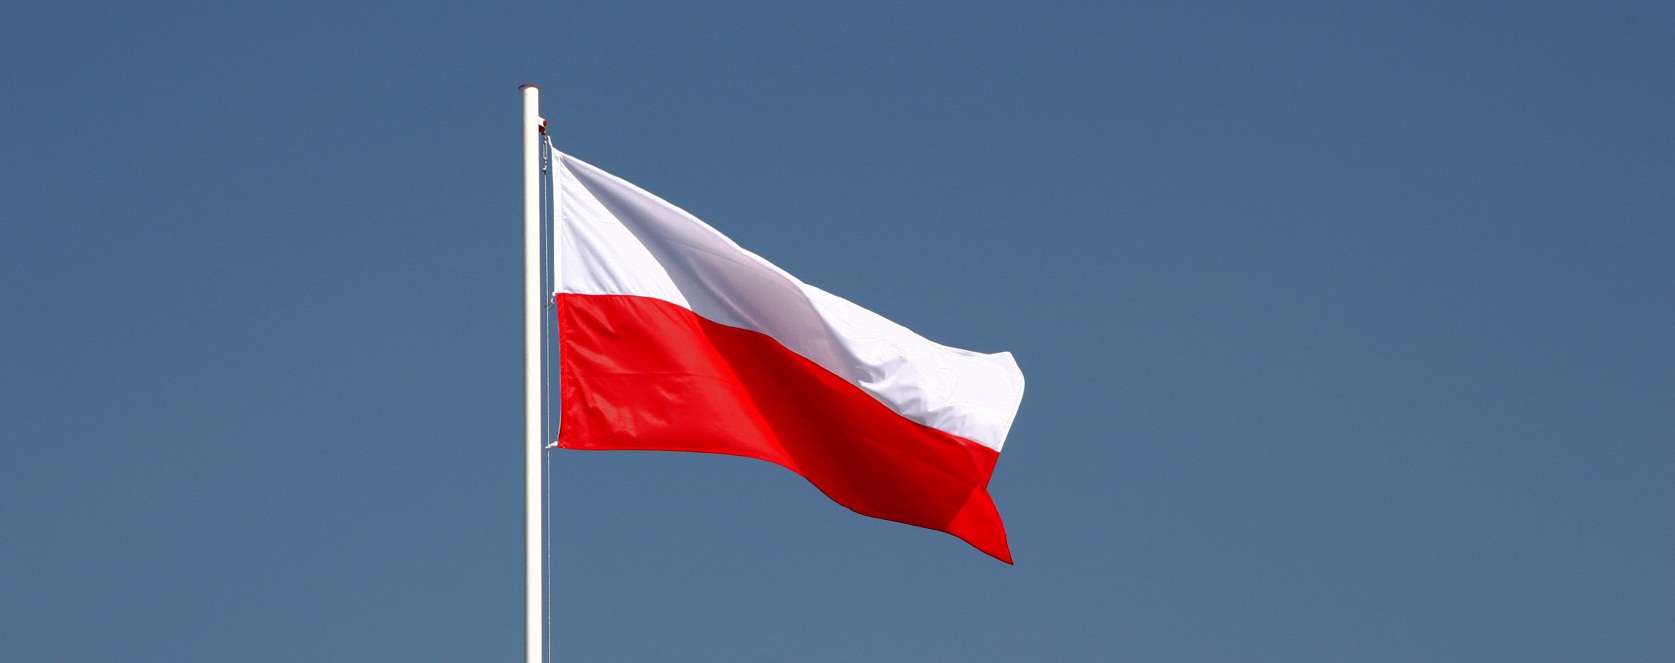 Państwo polskie